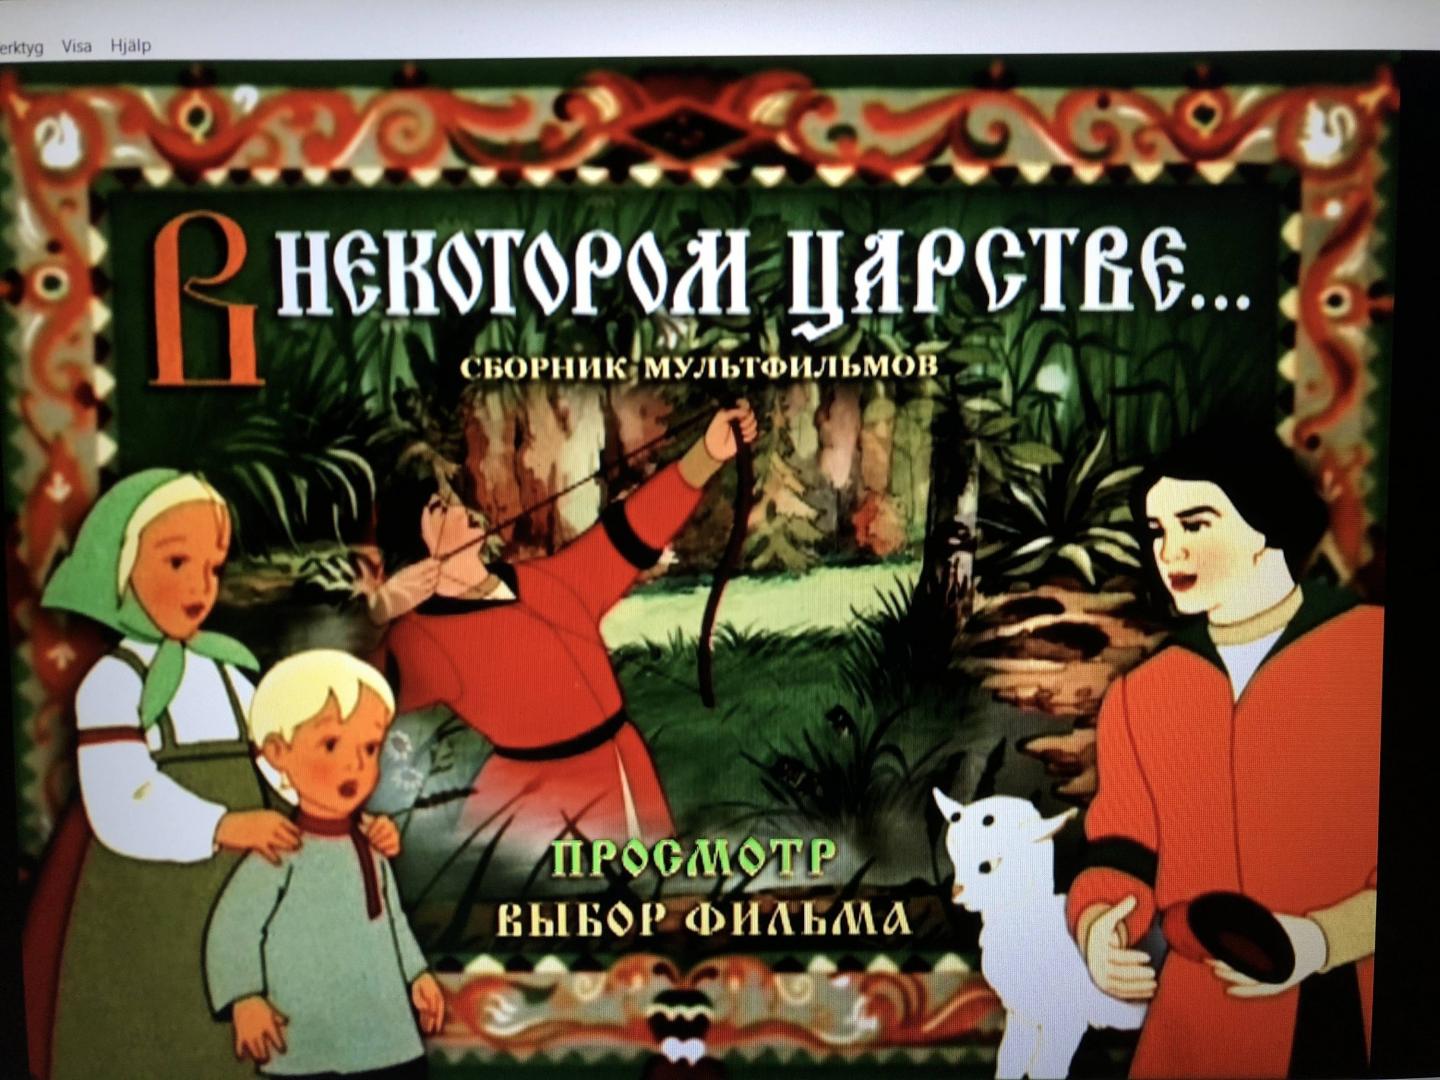 Включи сказки самому включать. Русские сказки 1 4 DVD Лабиринт. Сказки русских писателей DVD твйк.